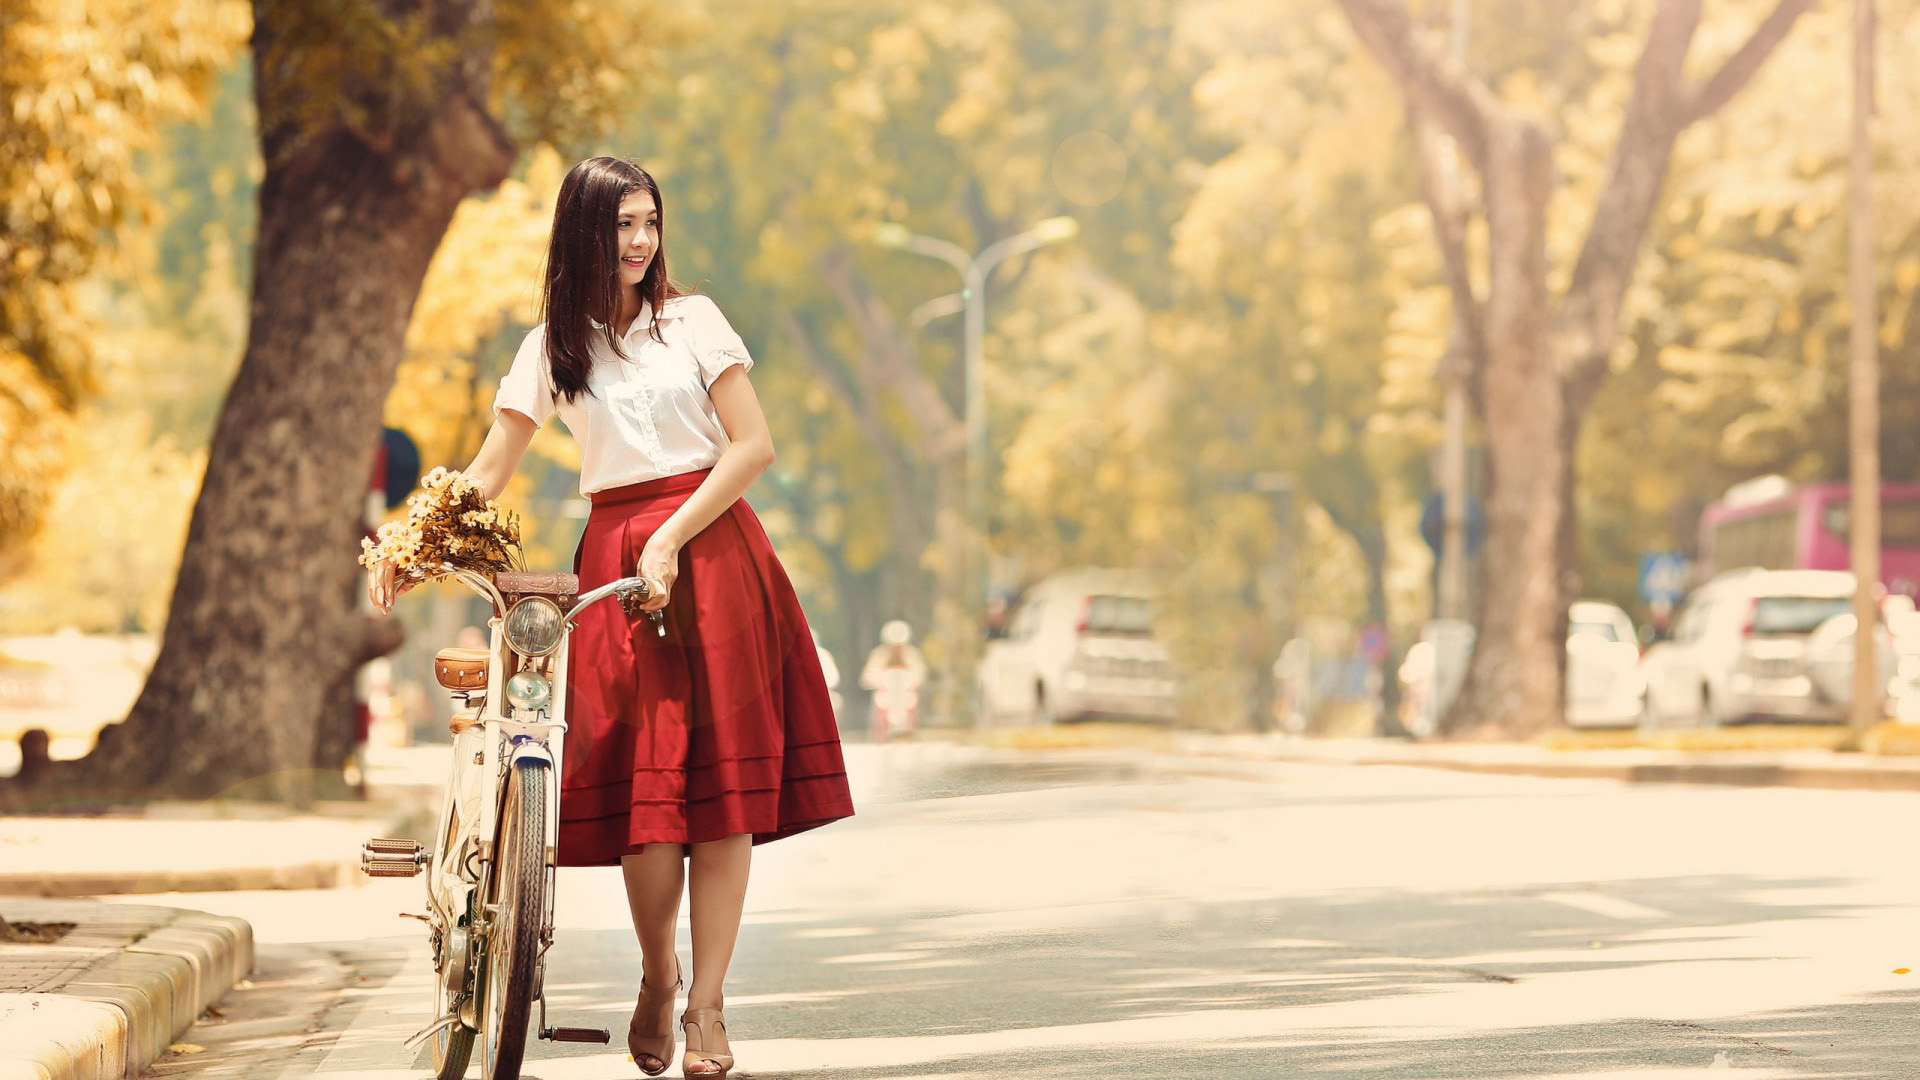 微笑的女孩,街道上,自行车,花束,唯美桌面壁纸